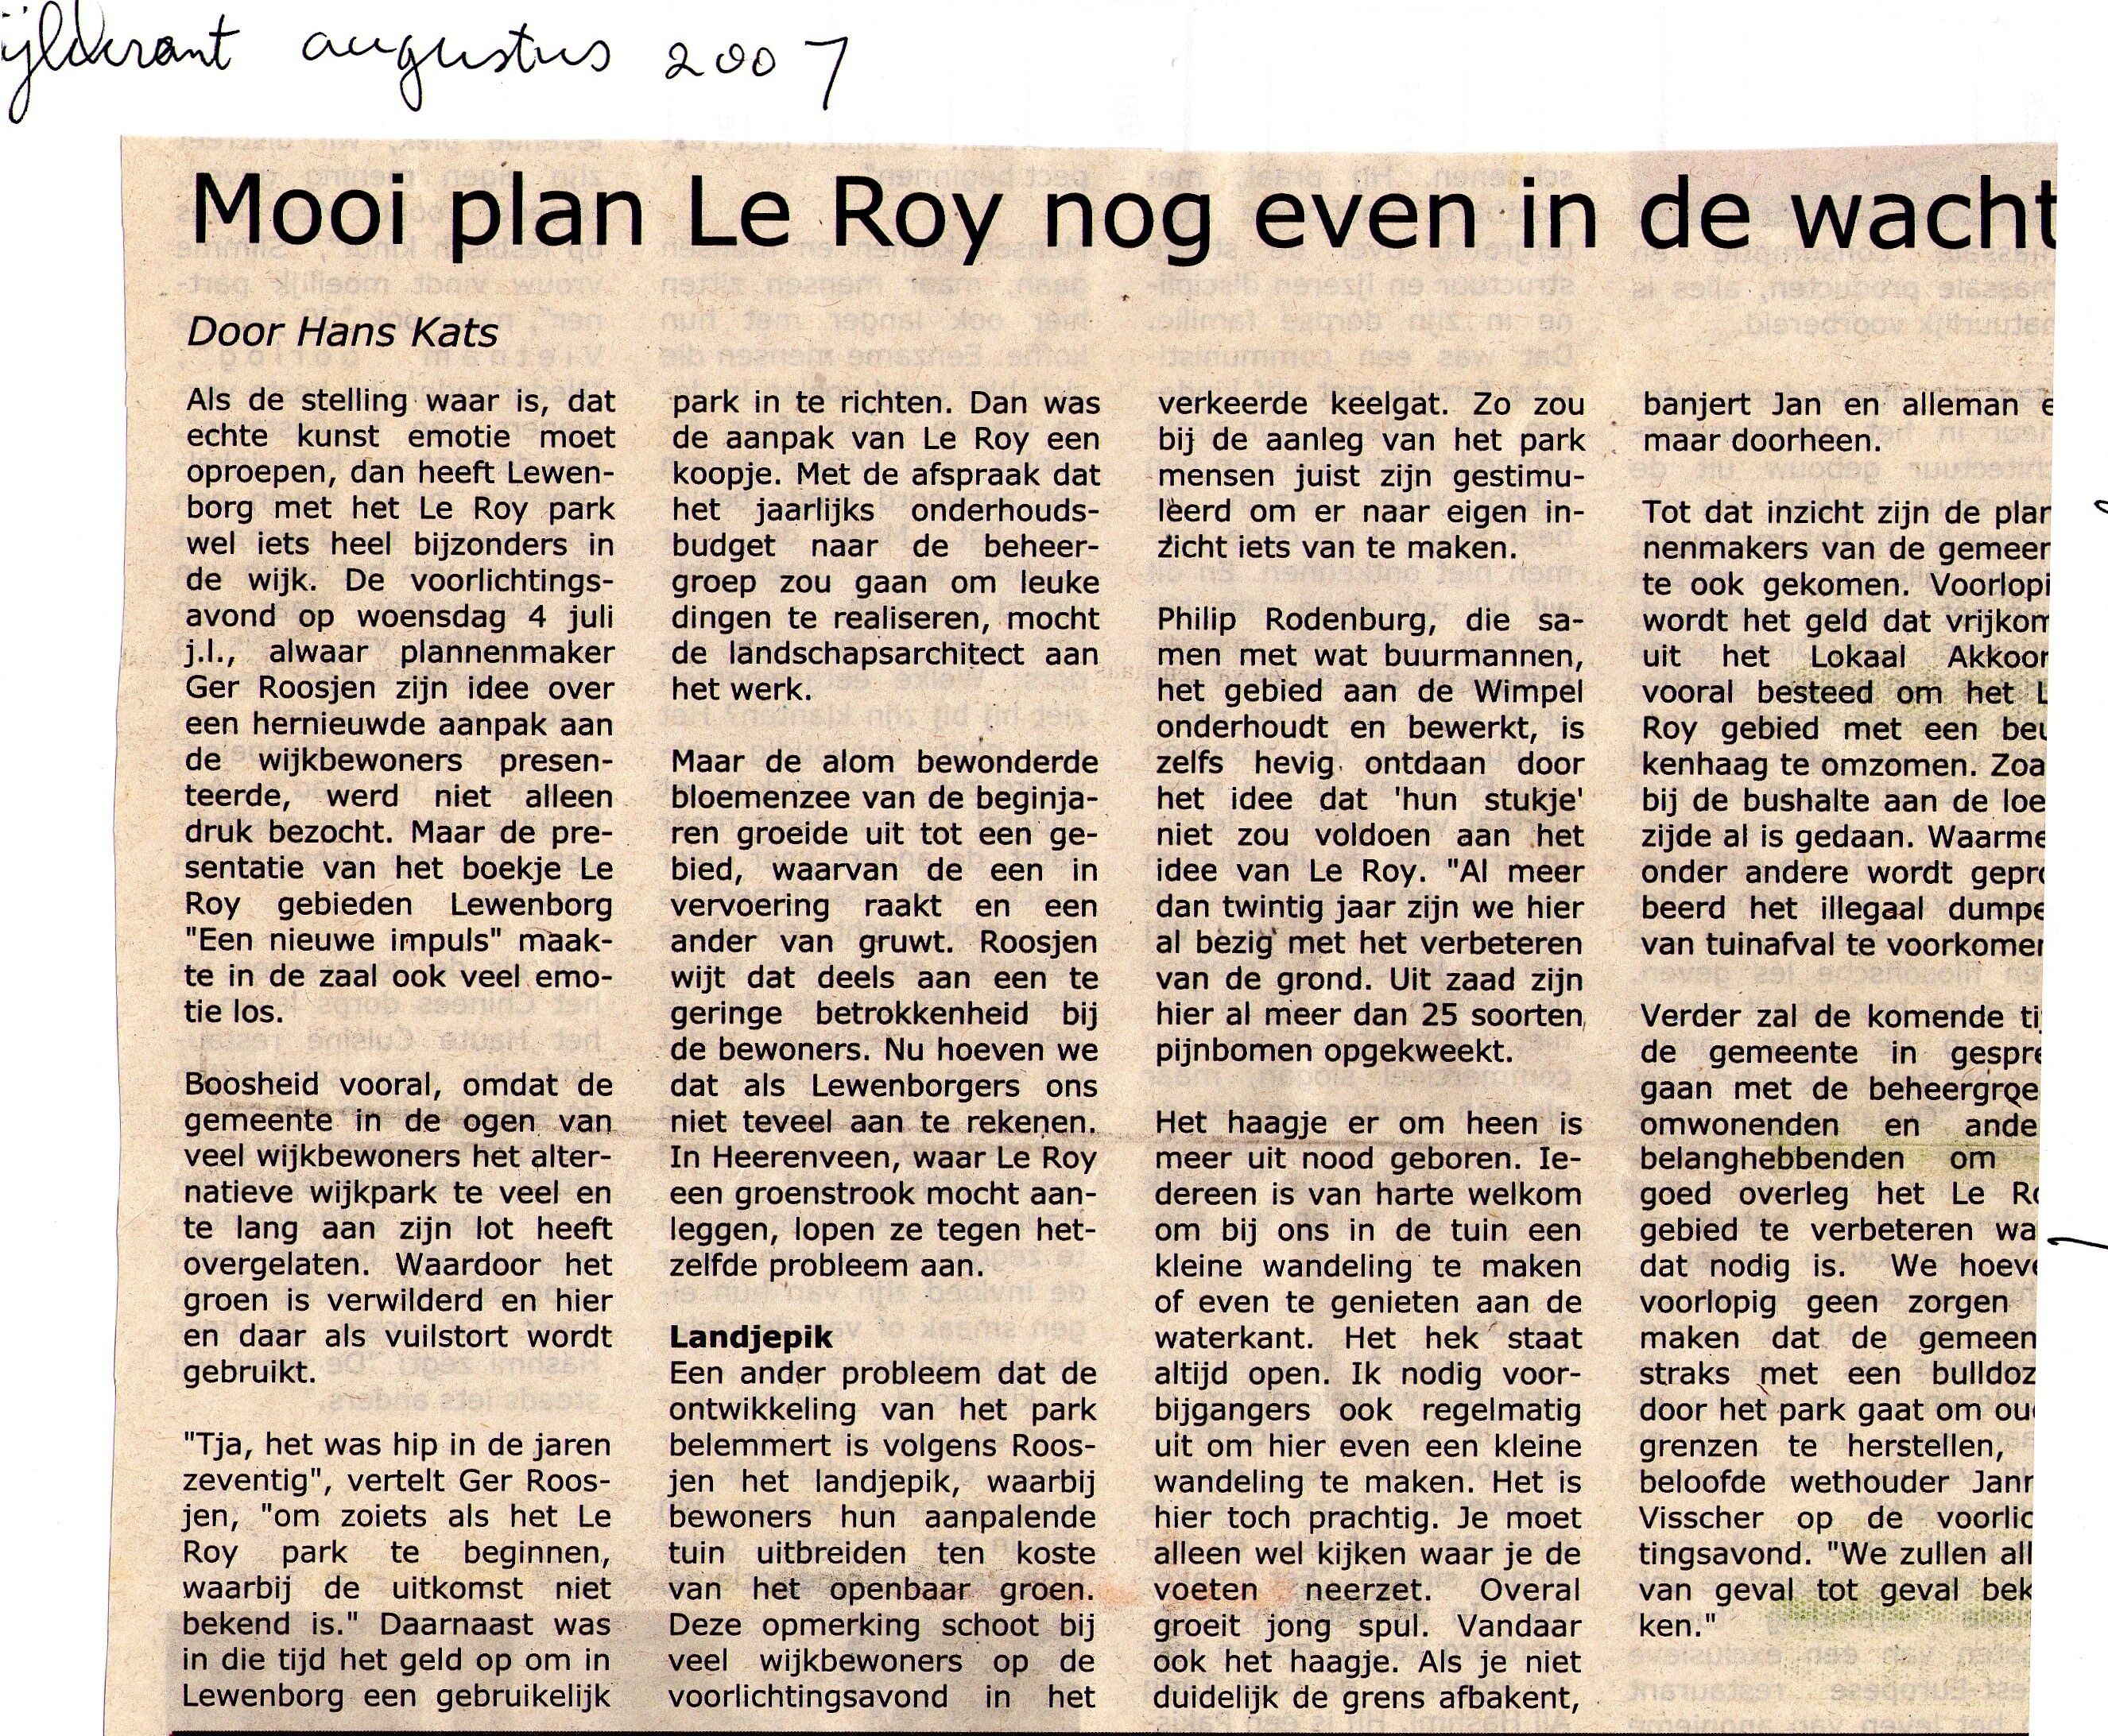 200708_Mooi_plan_Le_Roy_nog_even_in_de_wacht.jpg